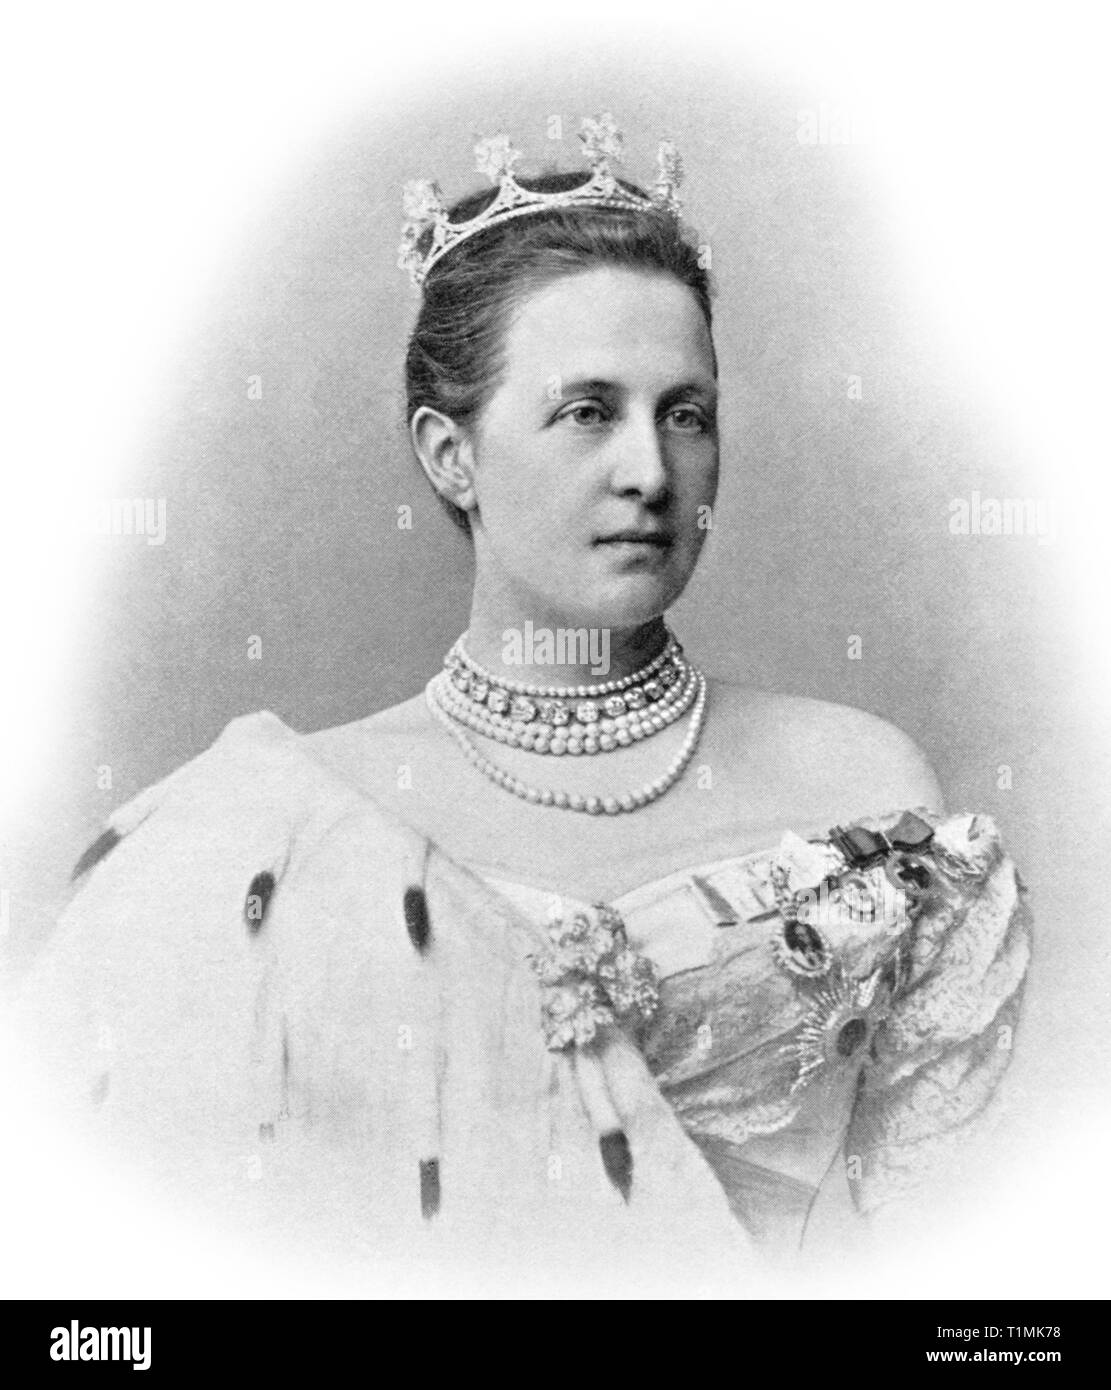 1897 fotografia di Olga Constantinovna della Russia, regina consorte del Elleni, moglie di Re Giorgio I di Grecia. Foto Stock